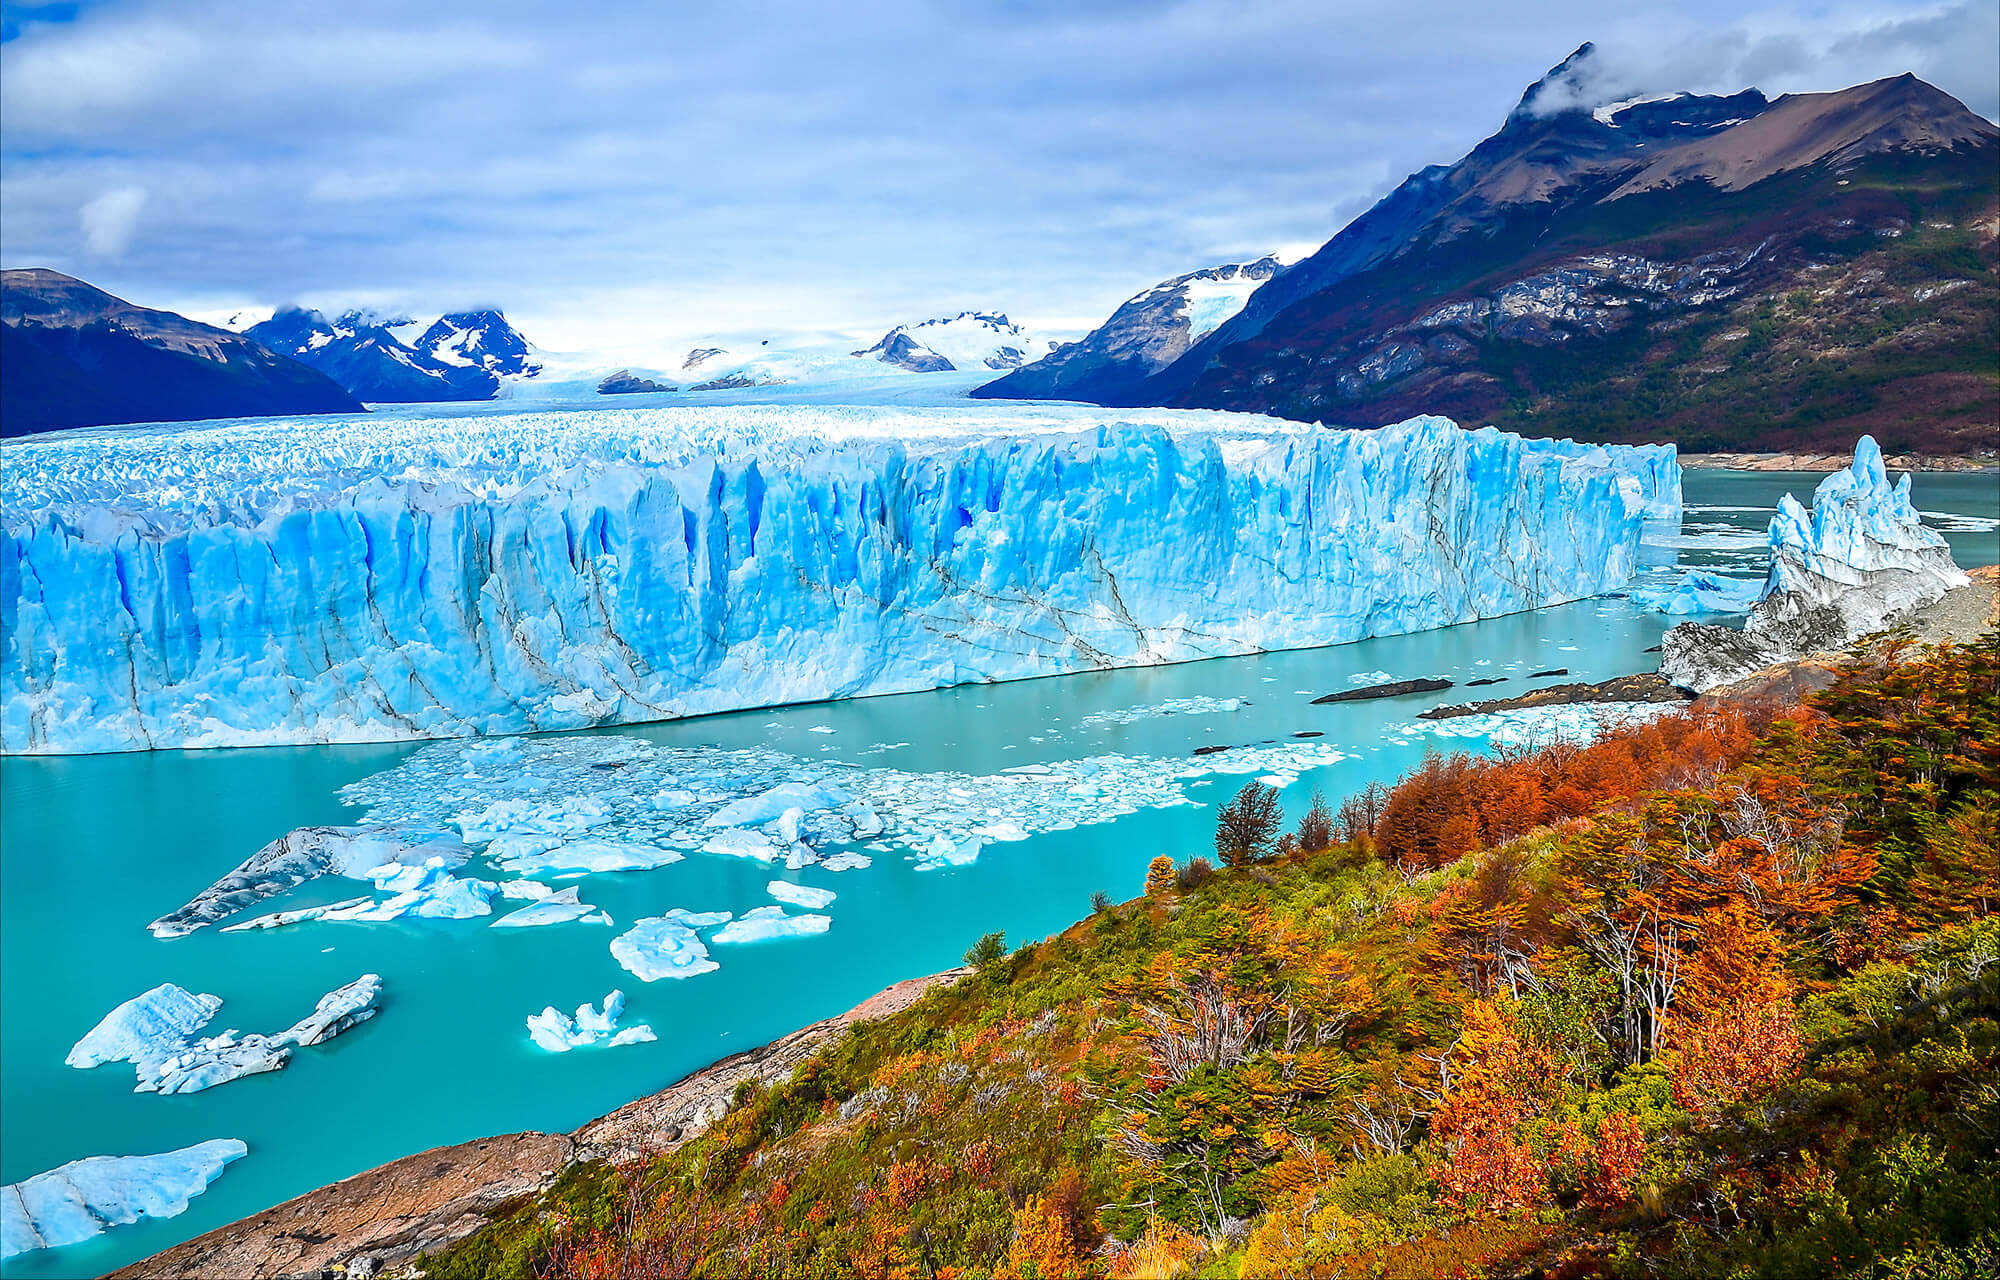 Perito Moreno Glacier in Patagonia, Argentina